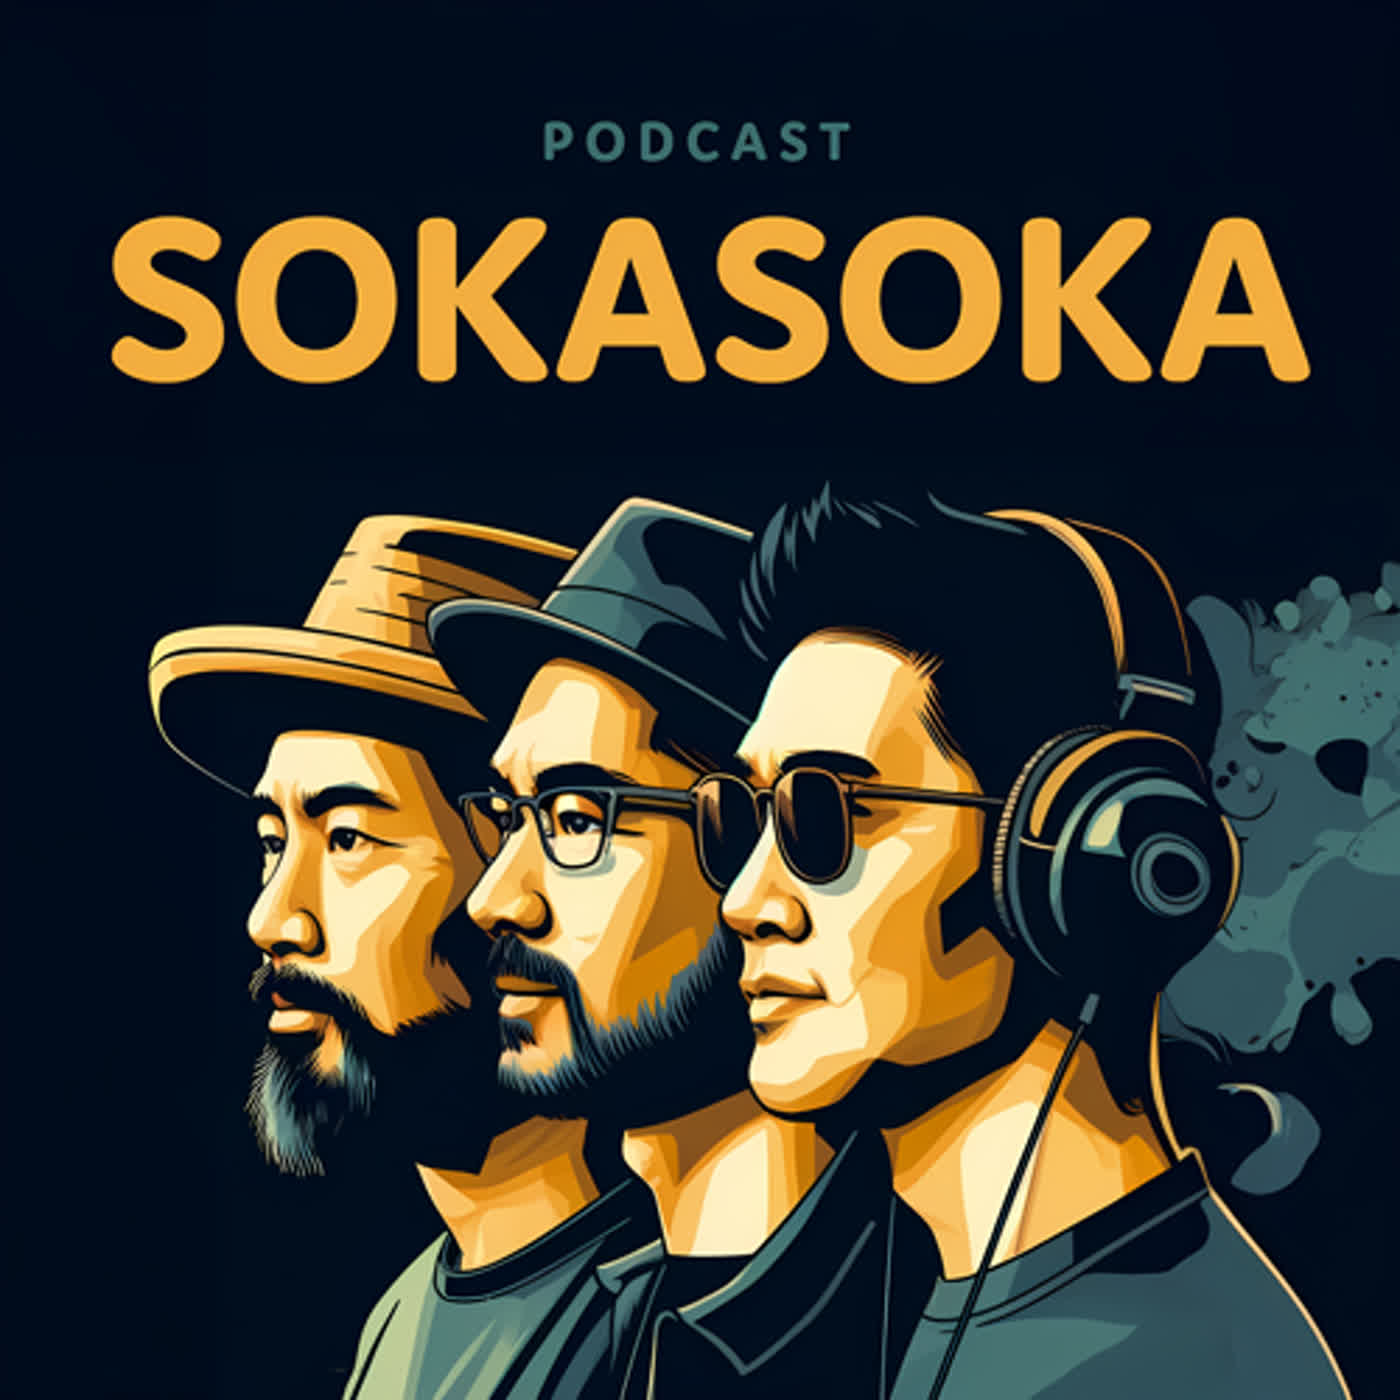 SOKASOKA #4 和嘉宾一行四人聊聊在日本“吃”这方面有啥特别的感受